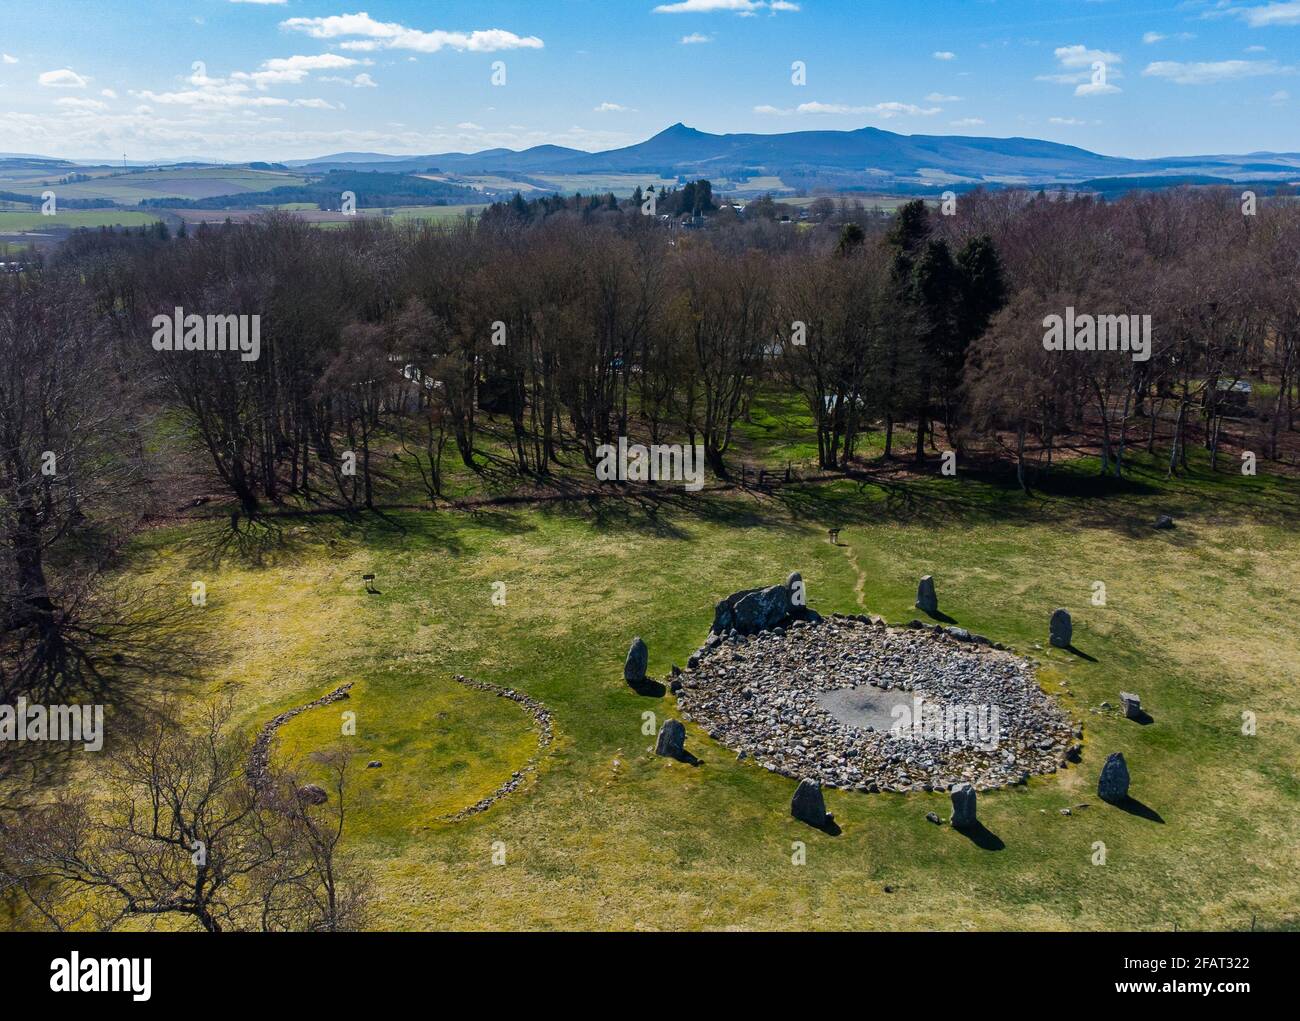 Loanhead de Daviot, cercle de pierres couchées, anciennes pierres Pichtish debout à Aberdeenshire, en Écosse, avec la colline Bennachie en arrière-plan Banque D'Images